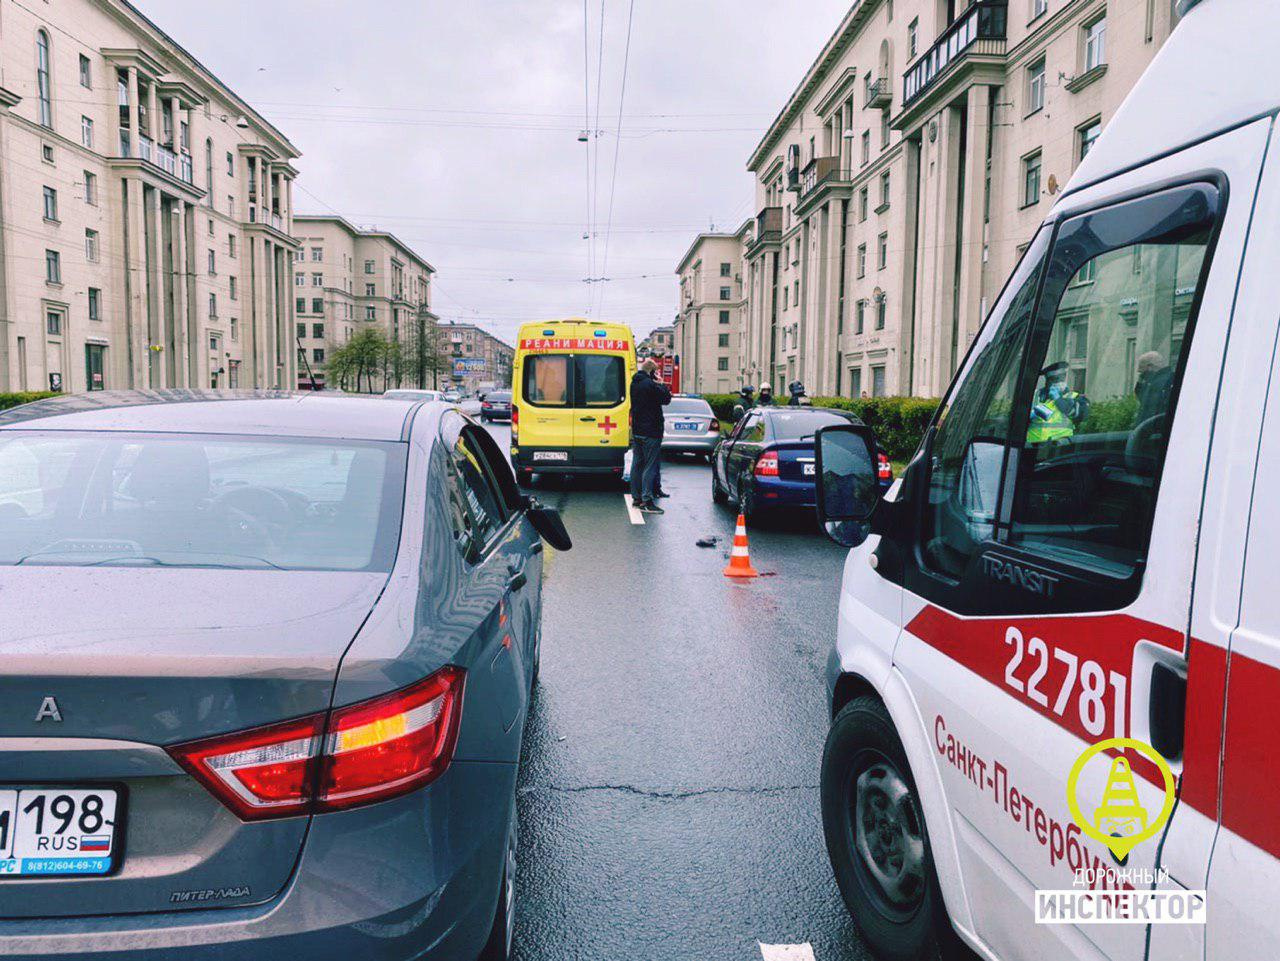 Переход Ивановской на красный прервал автомобиль. Очевидец заснял, как пешехода подбросило от удара